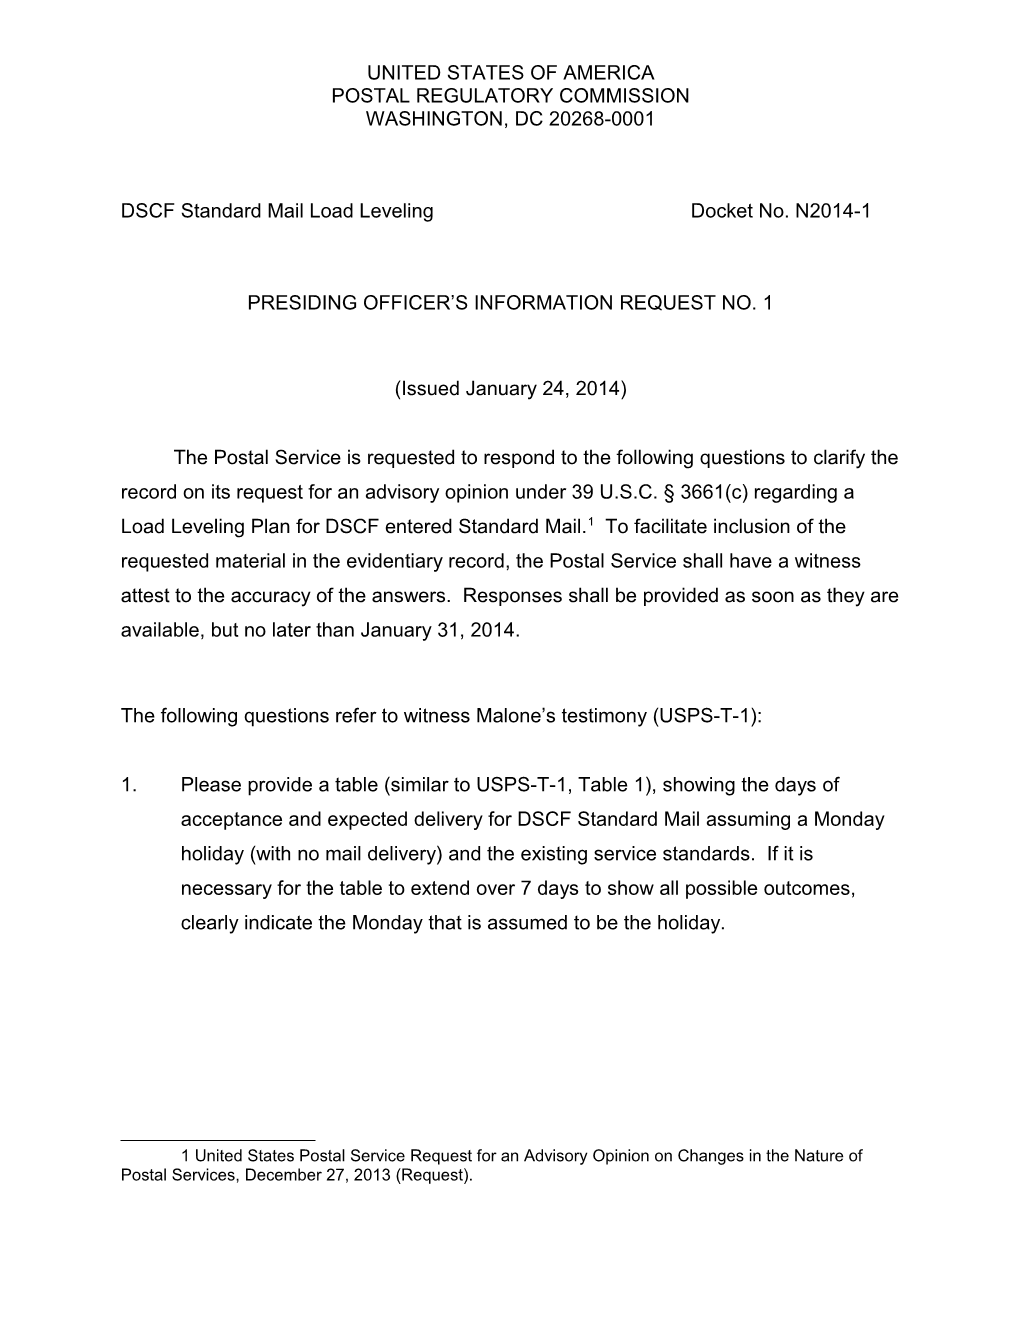 DSCF Standard Mail Load Levelingdocket No.N2014-1